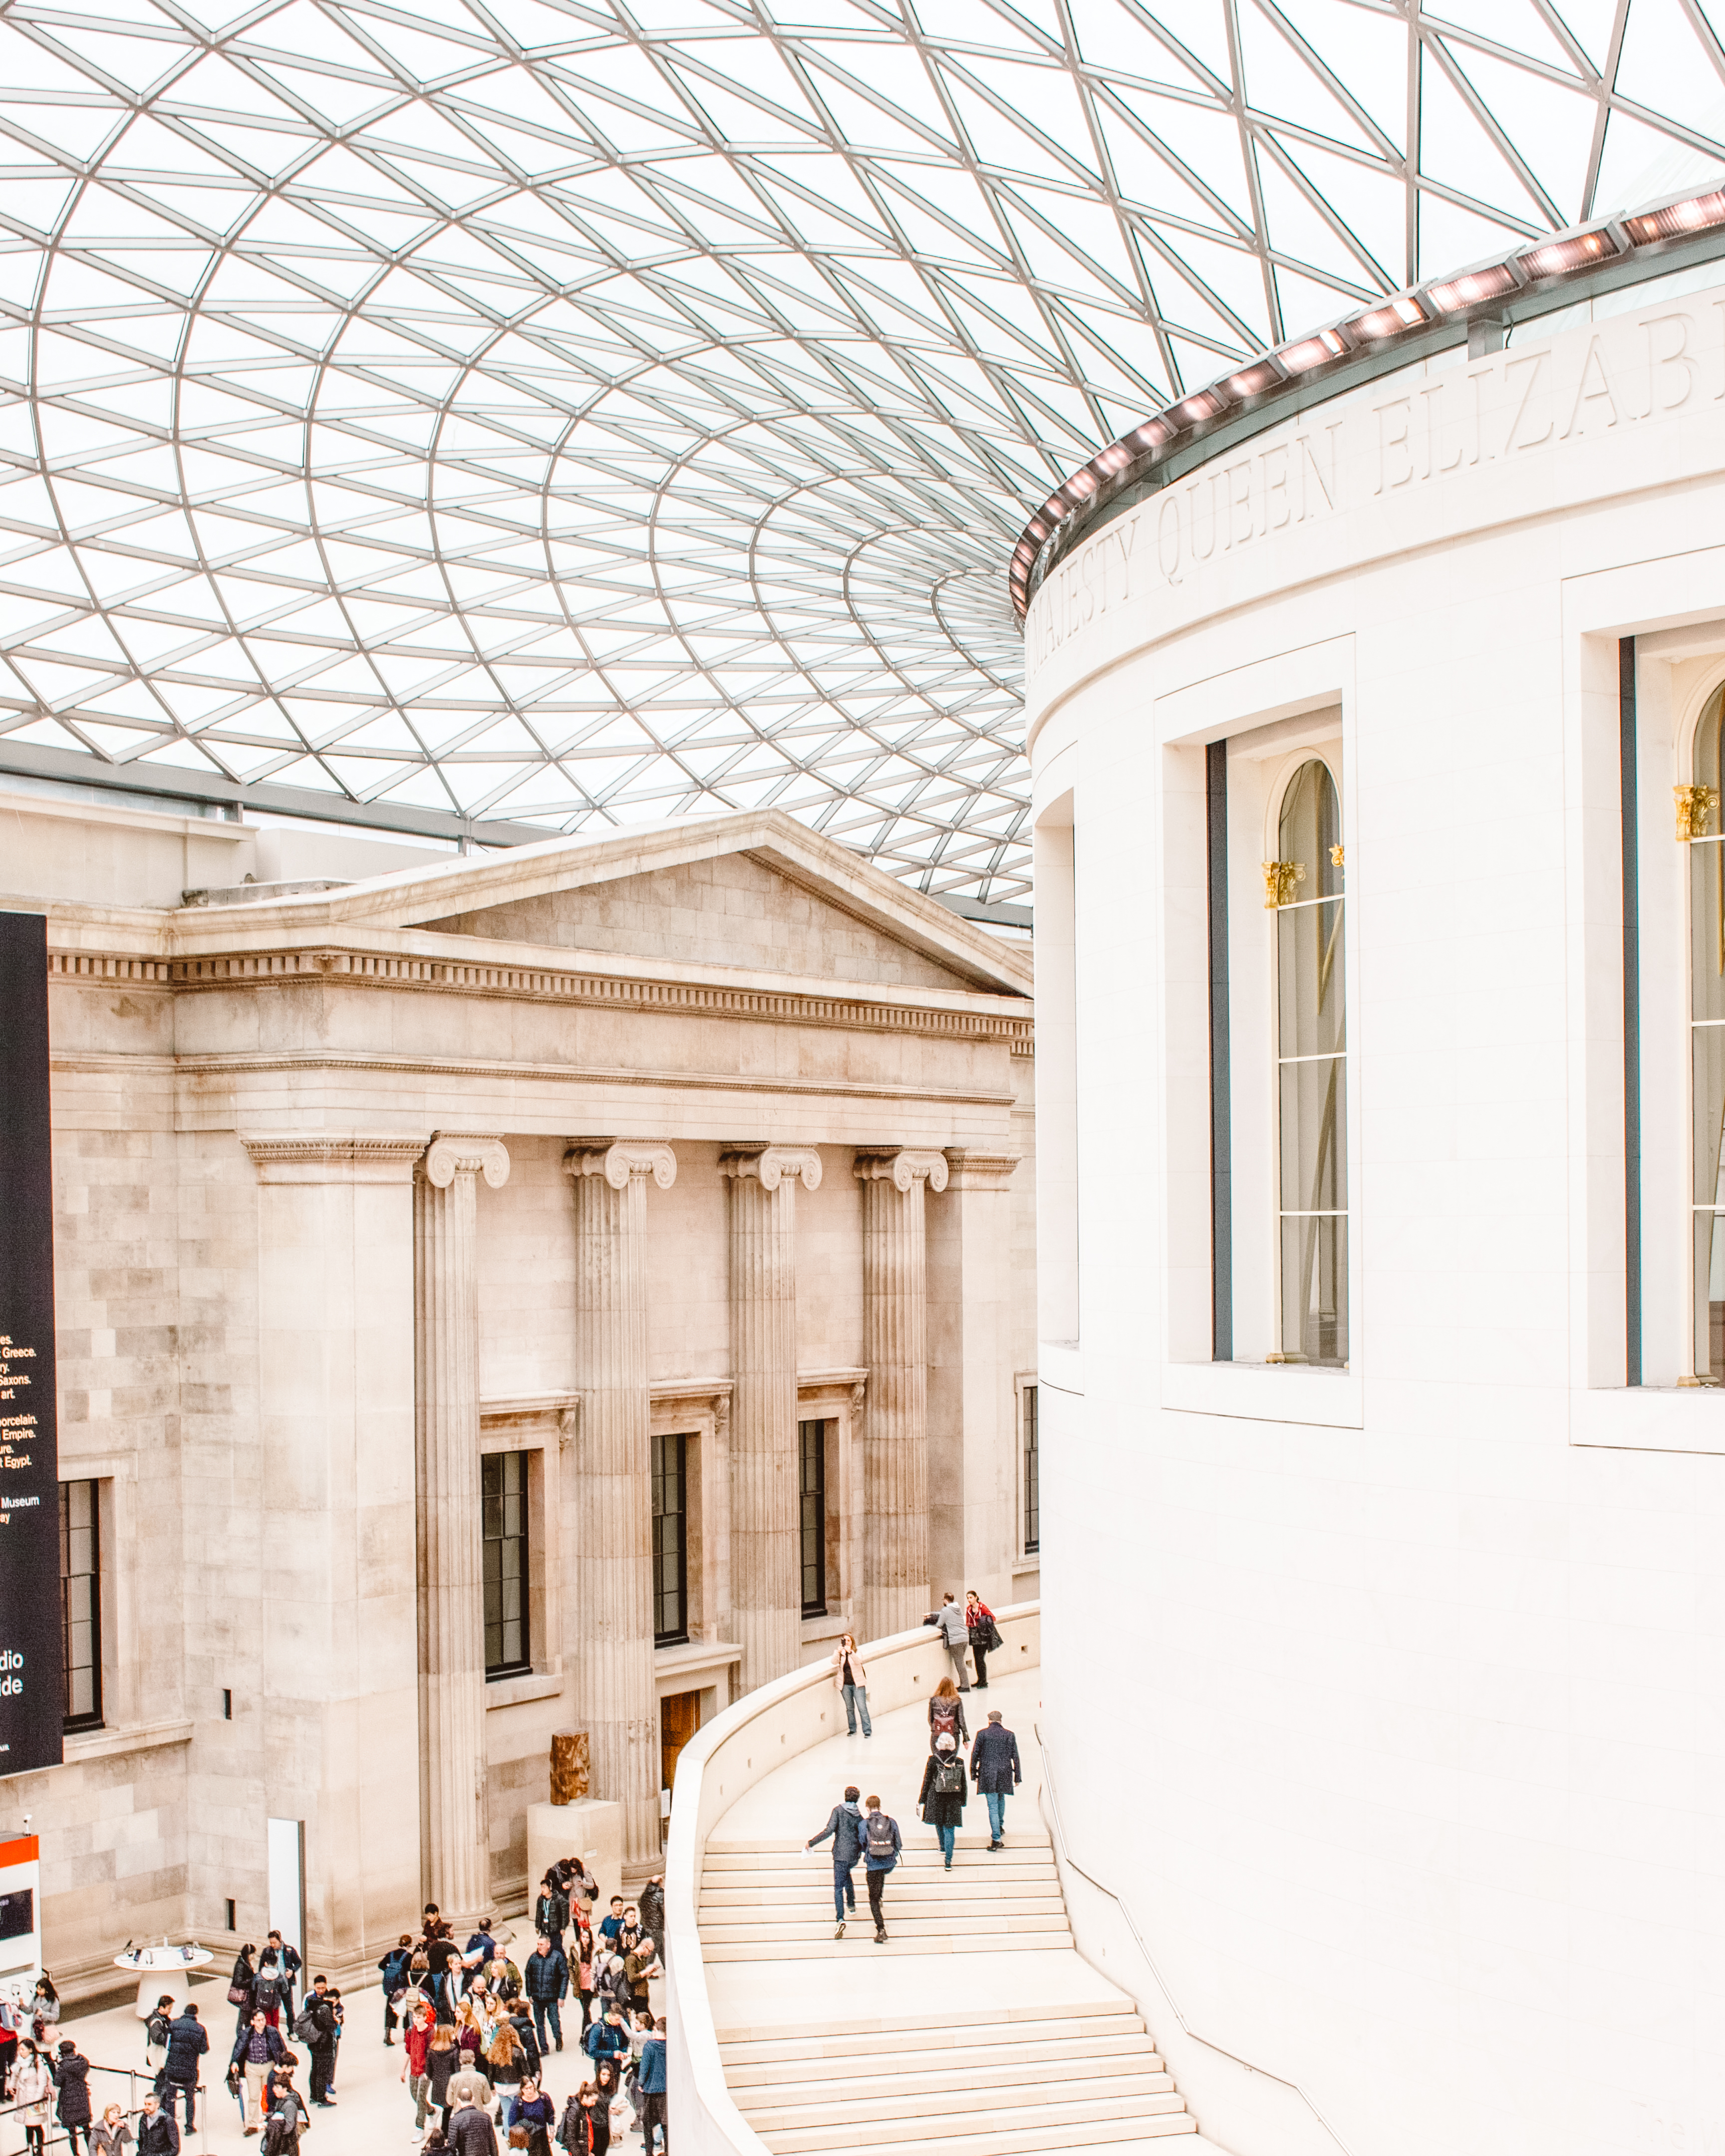 Central atrium of the British Museum